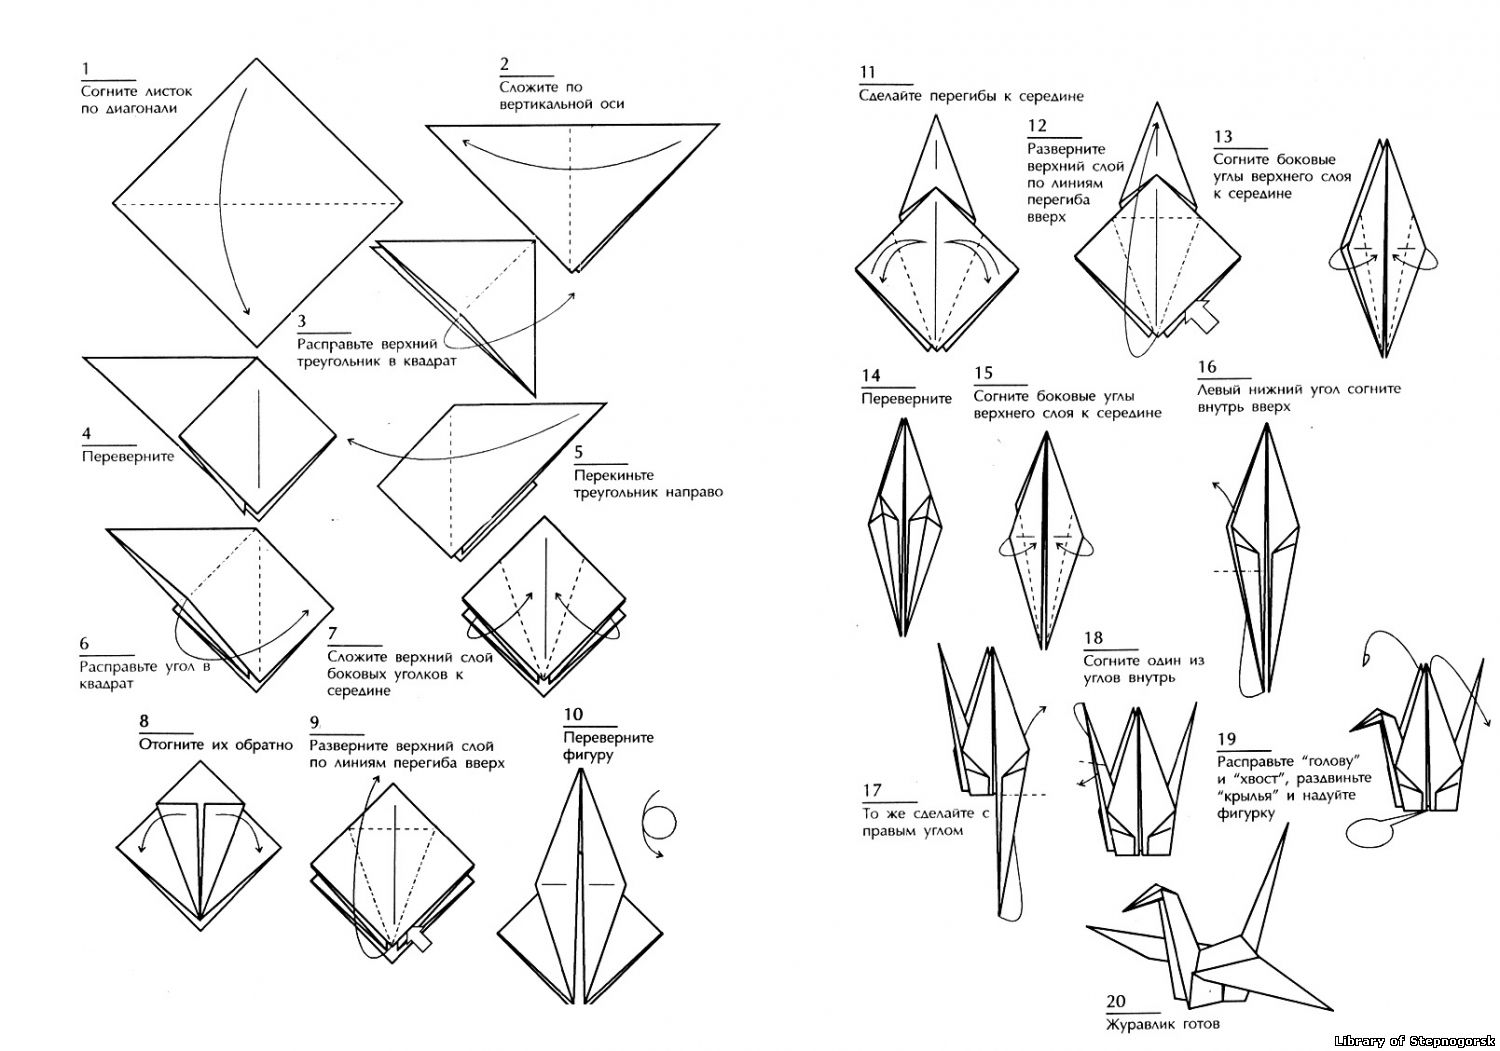 Оригами журавлик простой способ. Оригами из бумаги Журавлик схема для начинающих. Схема сборки журавлика оригами. Оригами из бумаги для начинающих Журавлик схема пошагово. Японский Журавлик схема сборки.